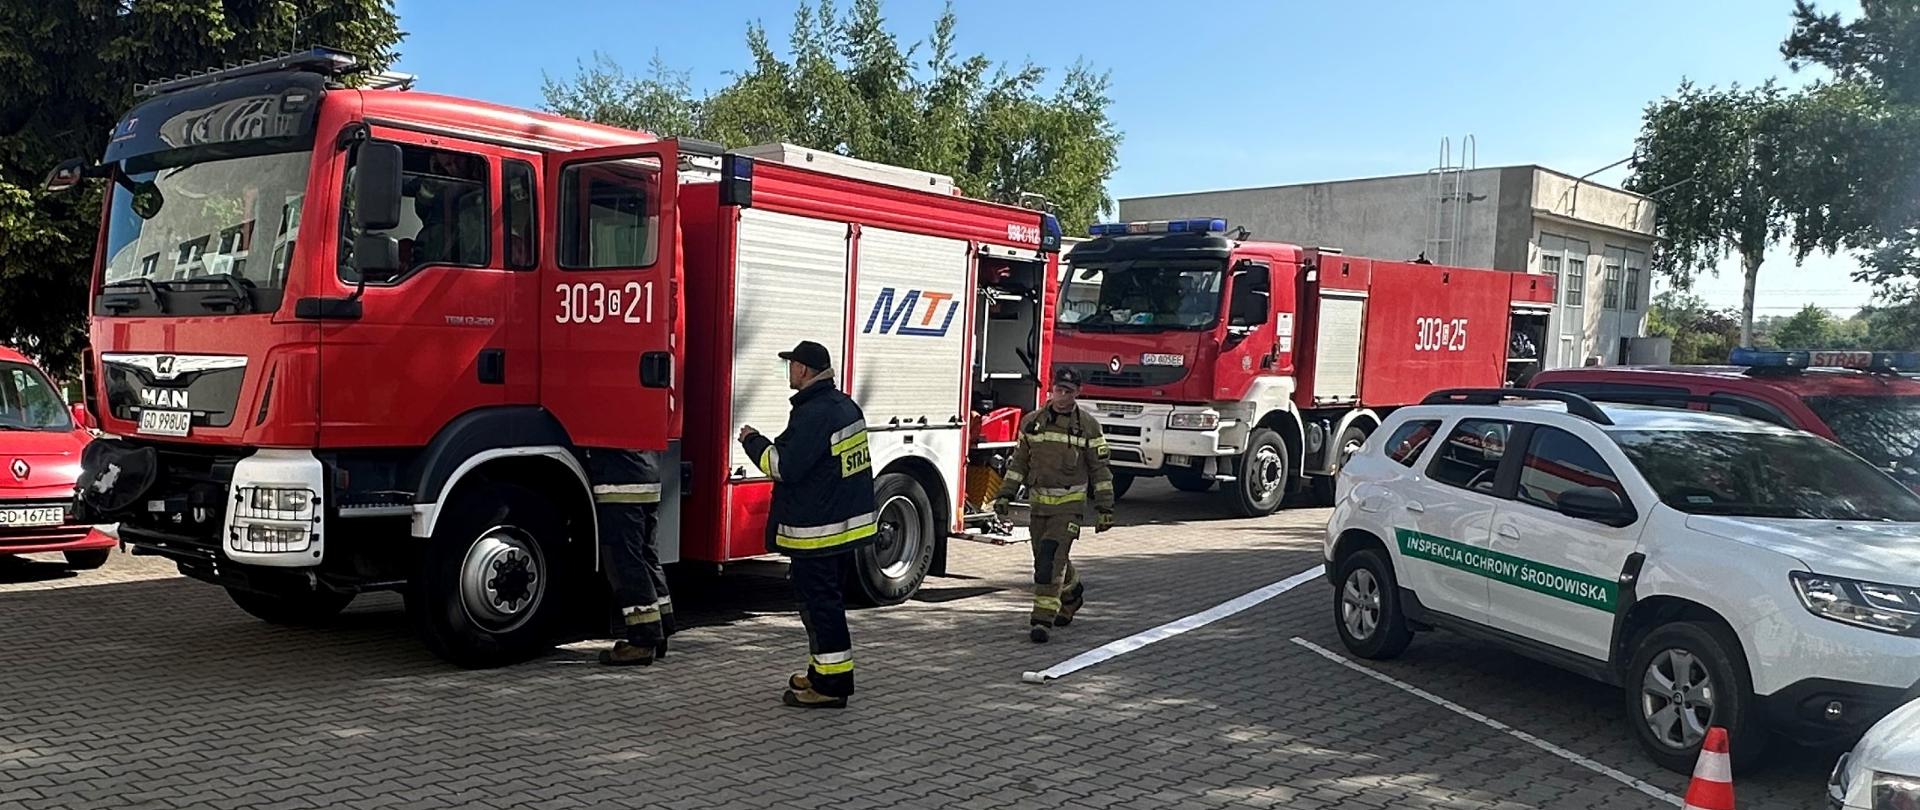 Strażacy podczas ćwiczeń: dwa wozy ratownicze PSP na parkingu siedziby WIOŚ w Gdańsku. Trzech strażaków przy wozach, na ziemi rozłożony wąż strażacki. Po lewej stronie oznakowany pojazd służbowy Inspekcji Ochrony Środowiska